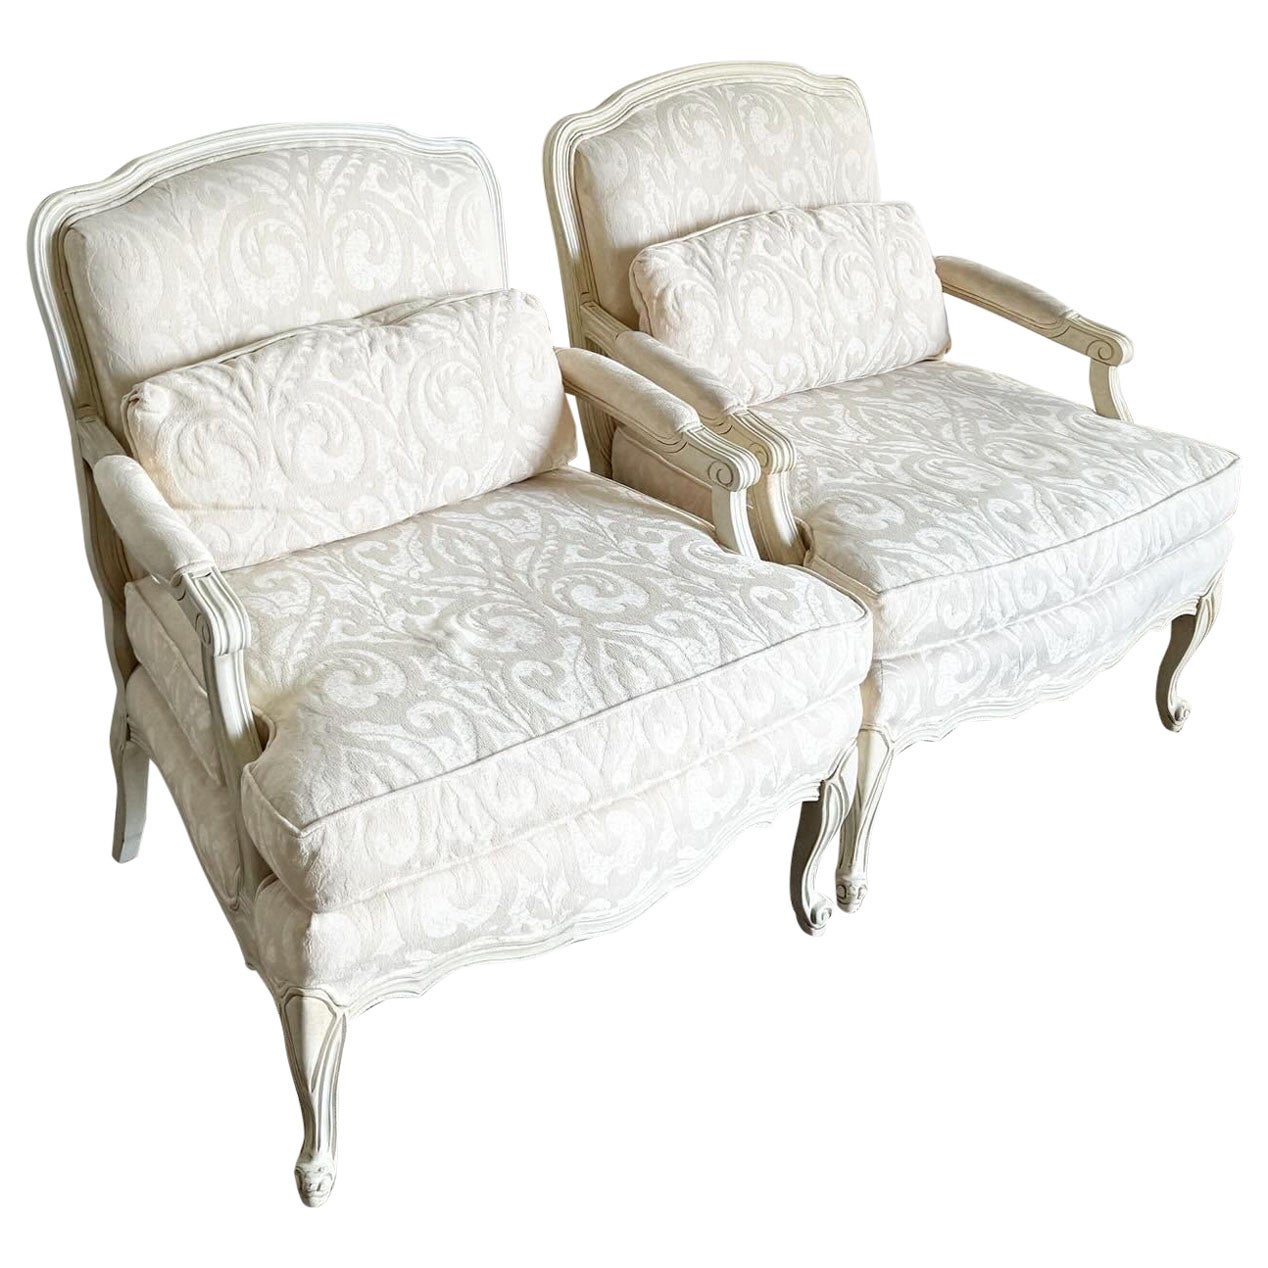 Paire de chaises à accoudoirs crème/off-White de style provincial français